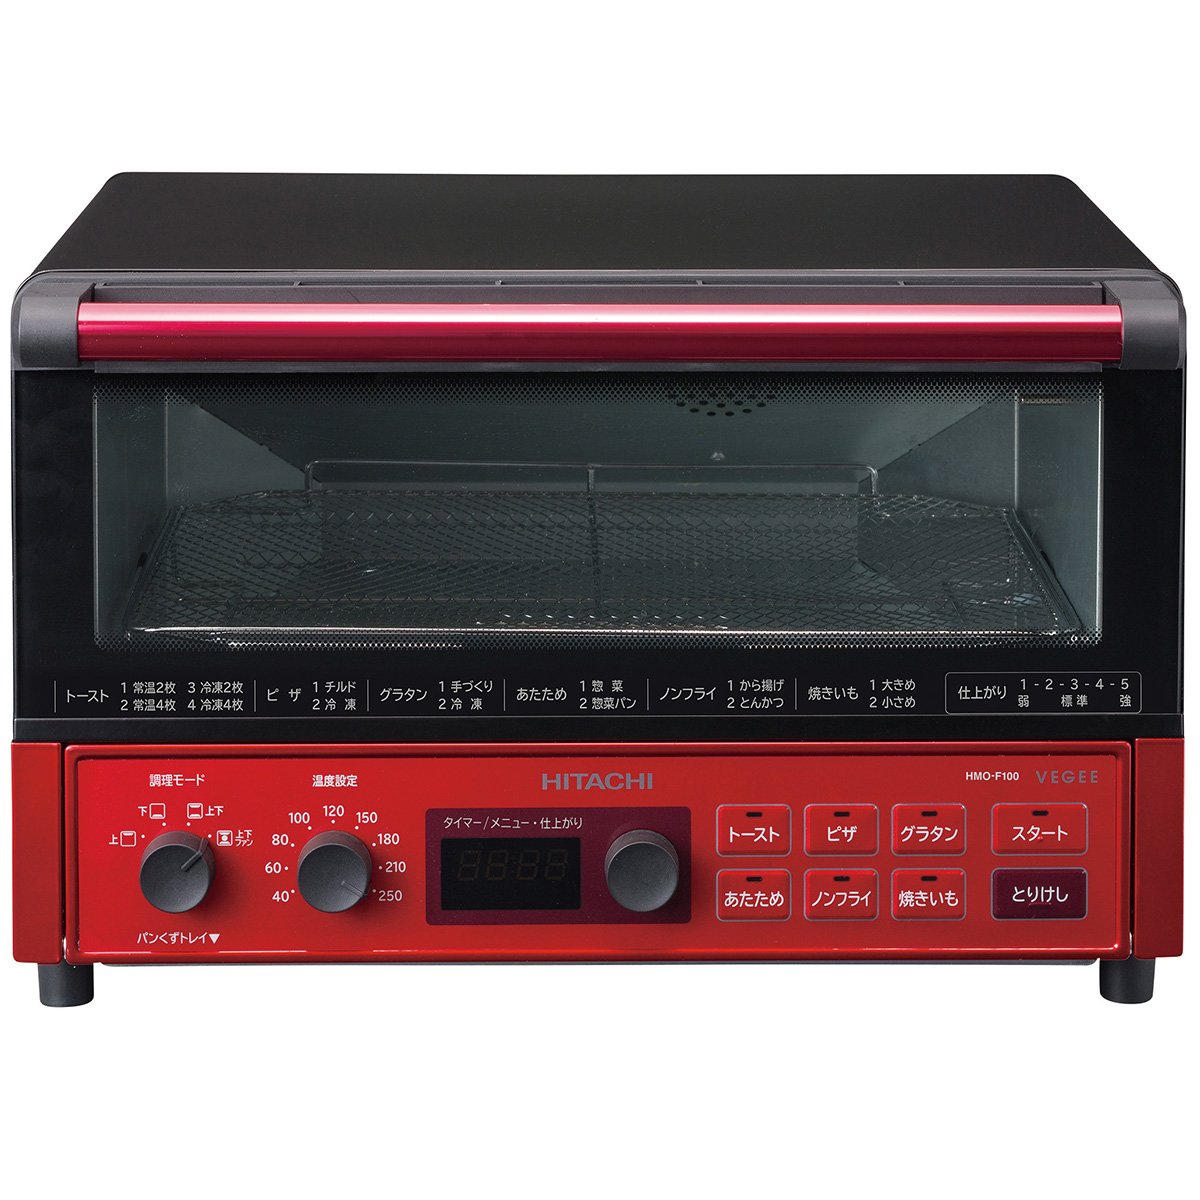 コンベクション オーブントースター 1300W 4枚焼き 遠赤ヒーター ノンフライ調理 メタリックレッド